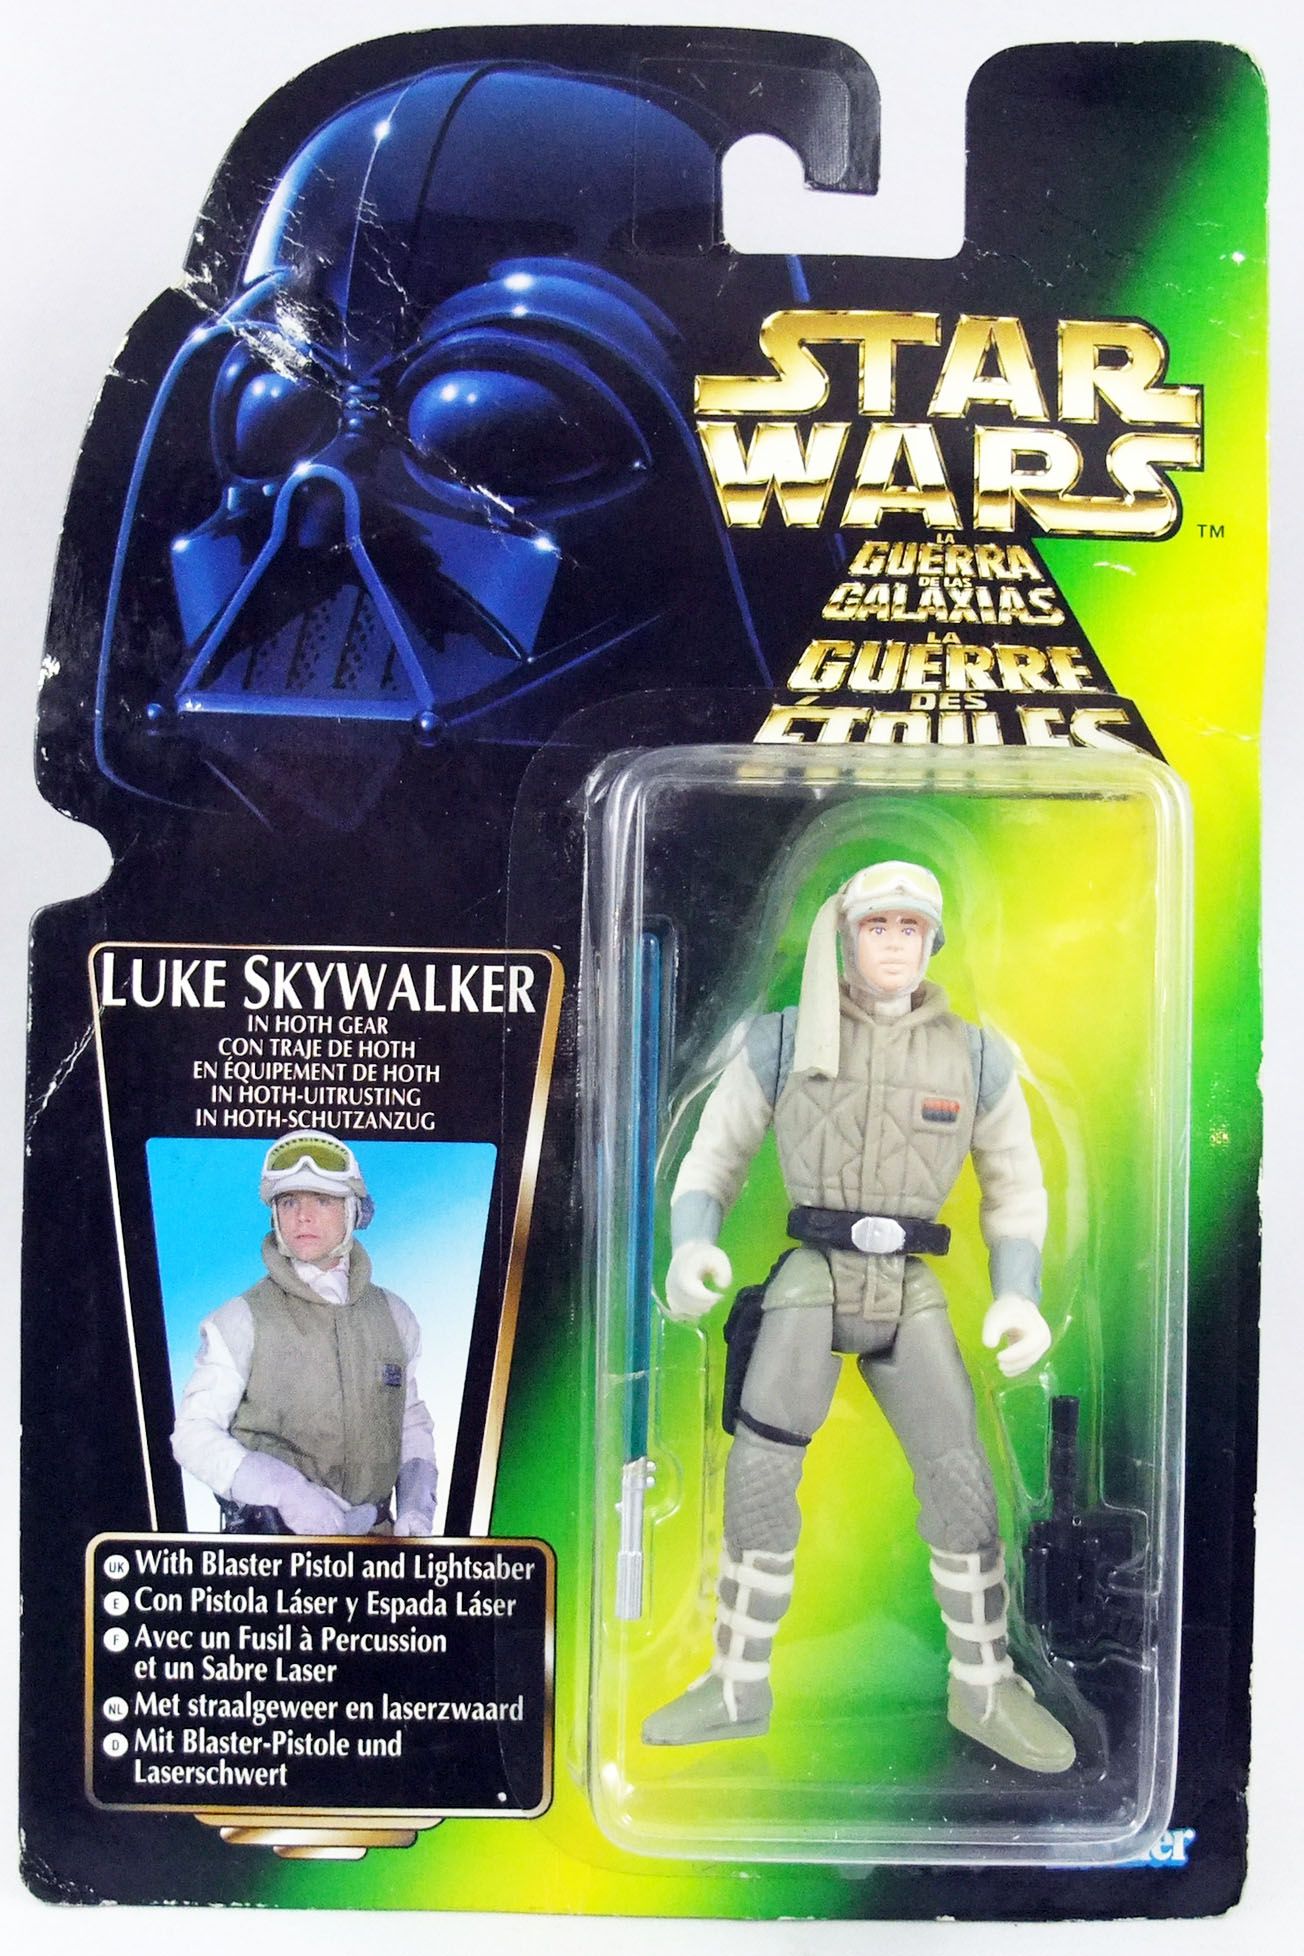 Star Wars Power of the Force) - Kenner Luke Skywalker in Gear (Euro Card)